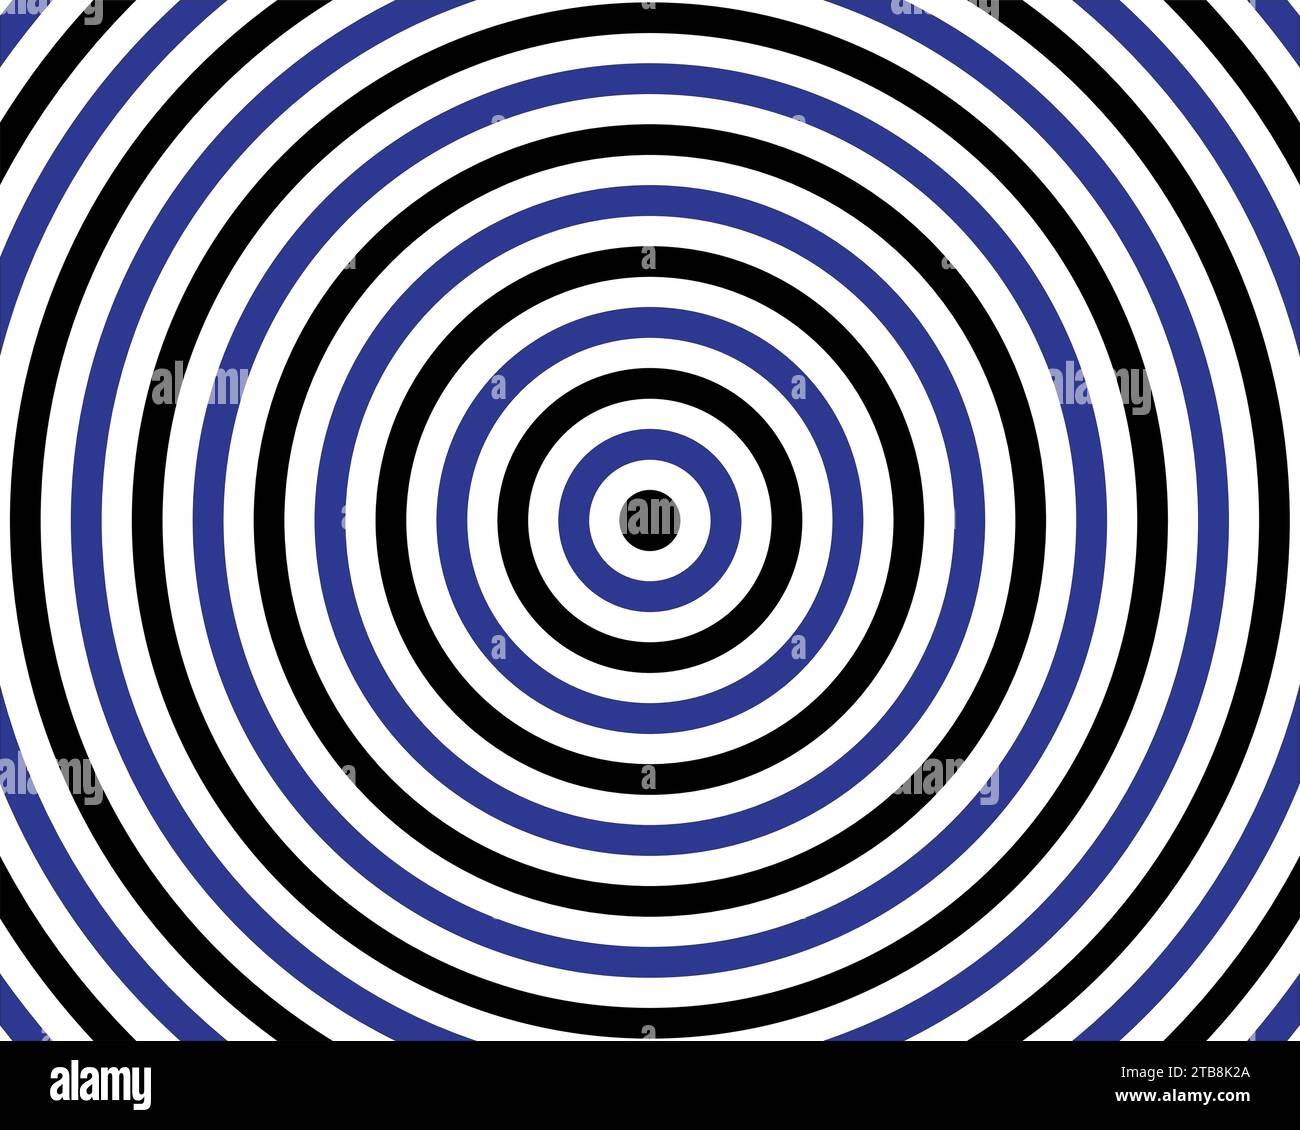 Schwarzer und blauer spiralförmiger optischer Illusionshintergrund Stock Vektor